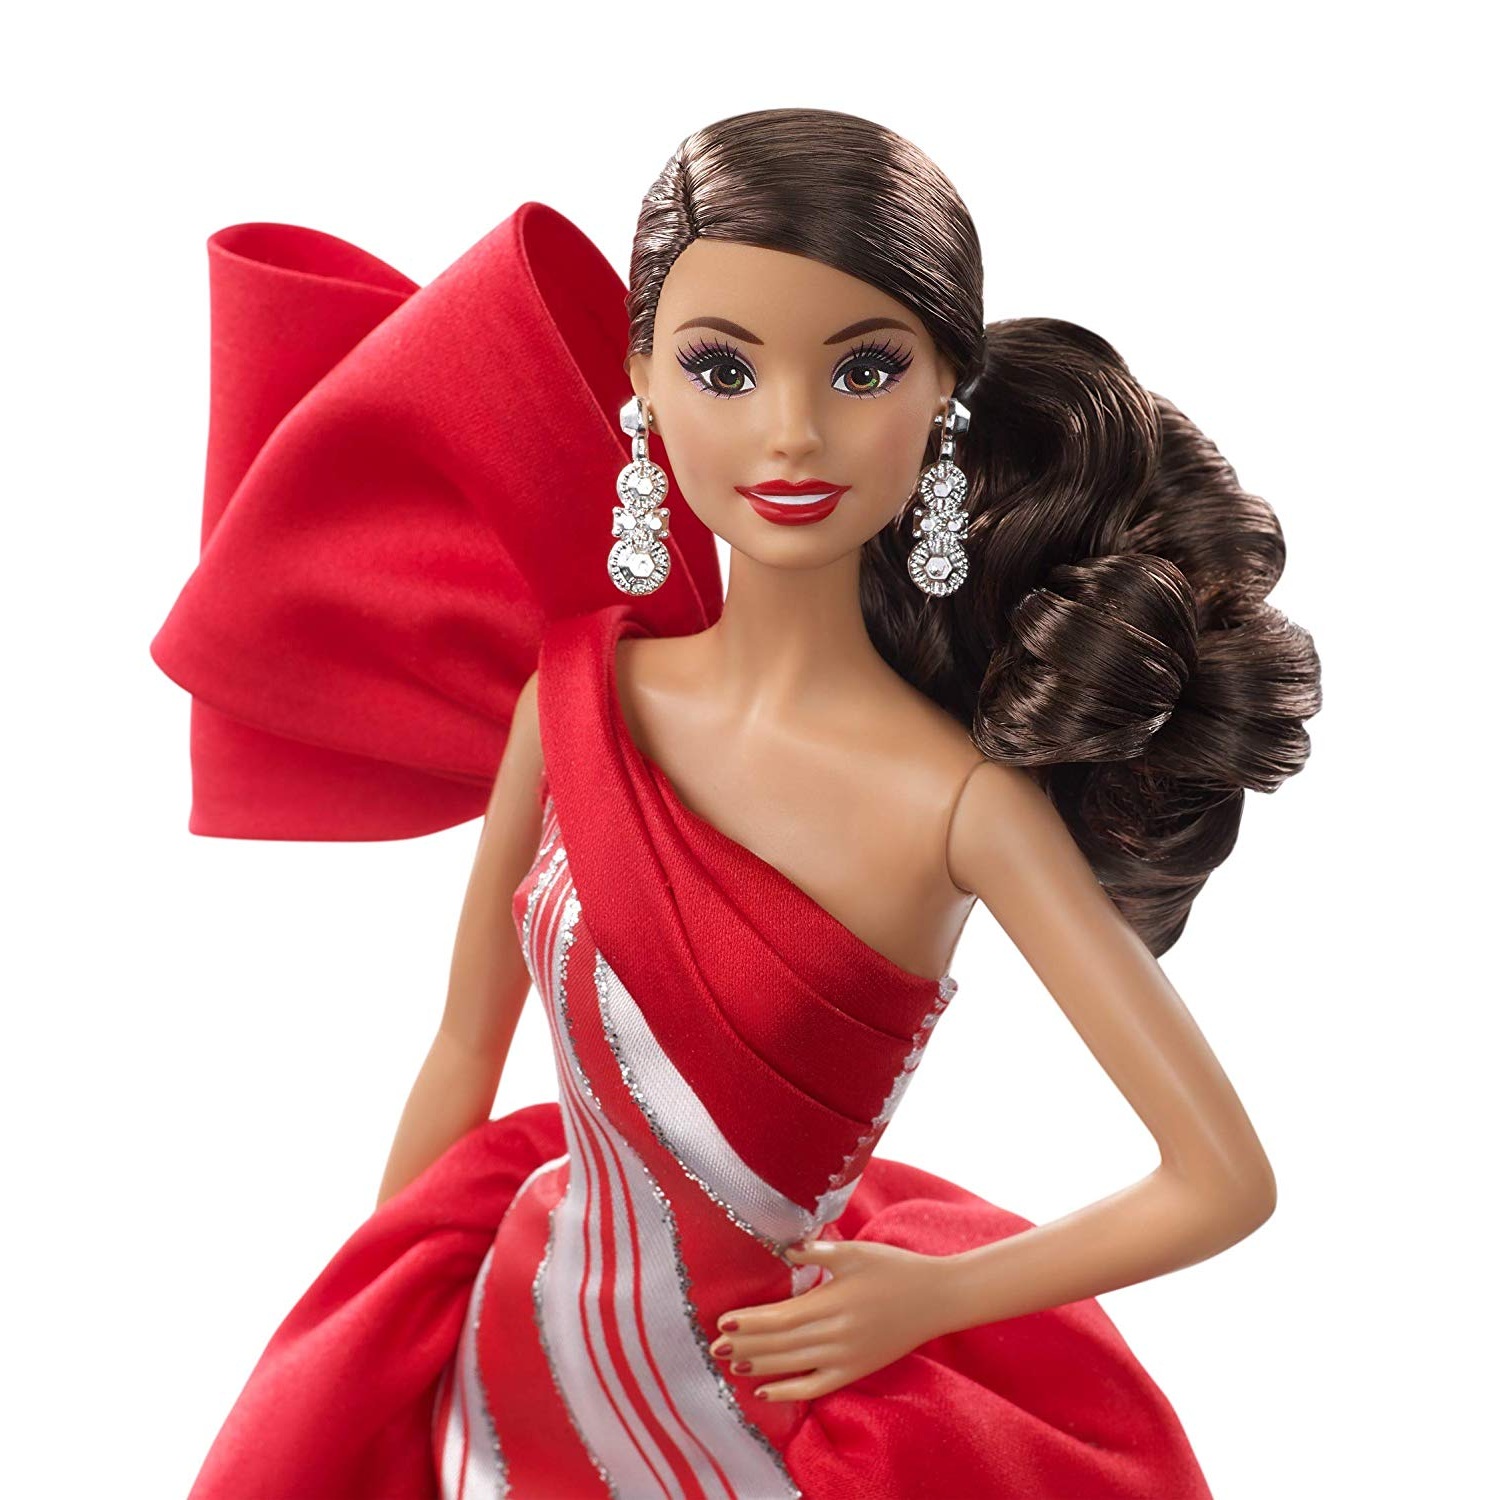 Кукла Барби Холидей Праздник 2019 (брюнетка) (Mattel 2019 Holiday